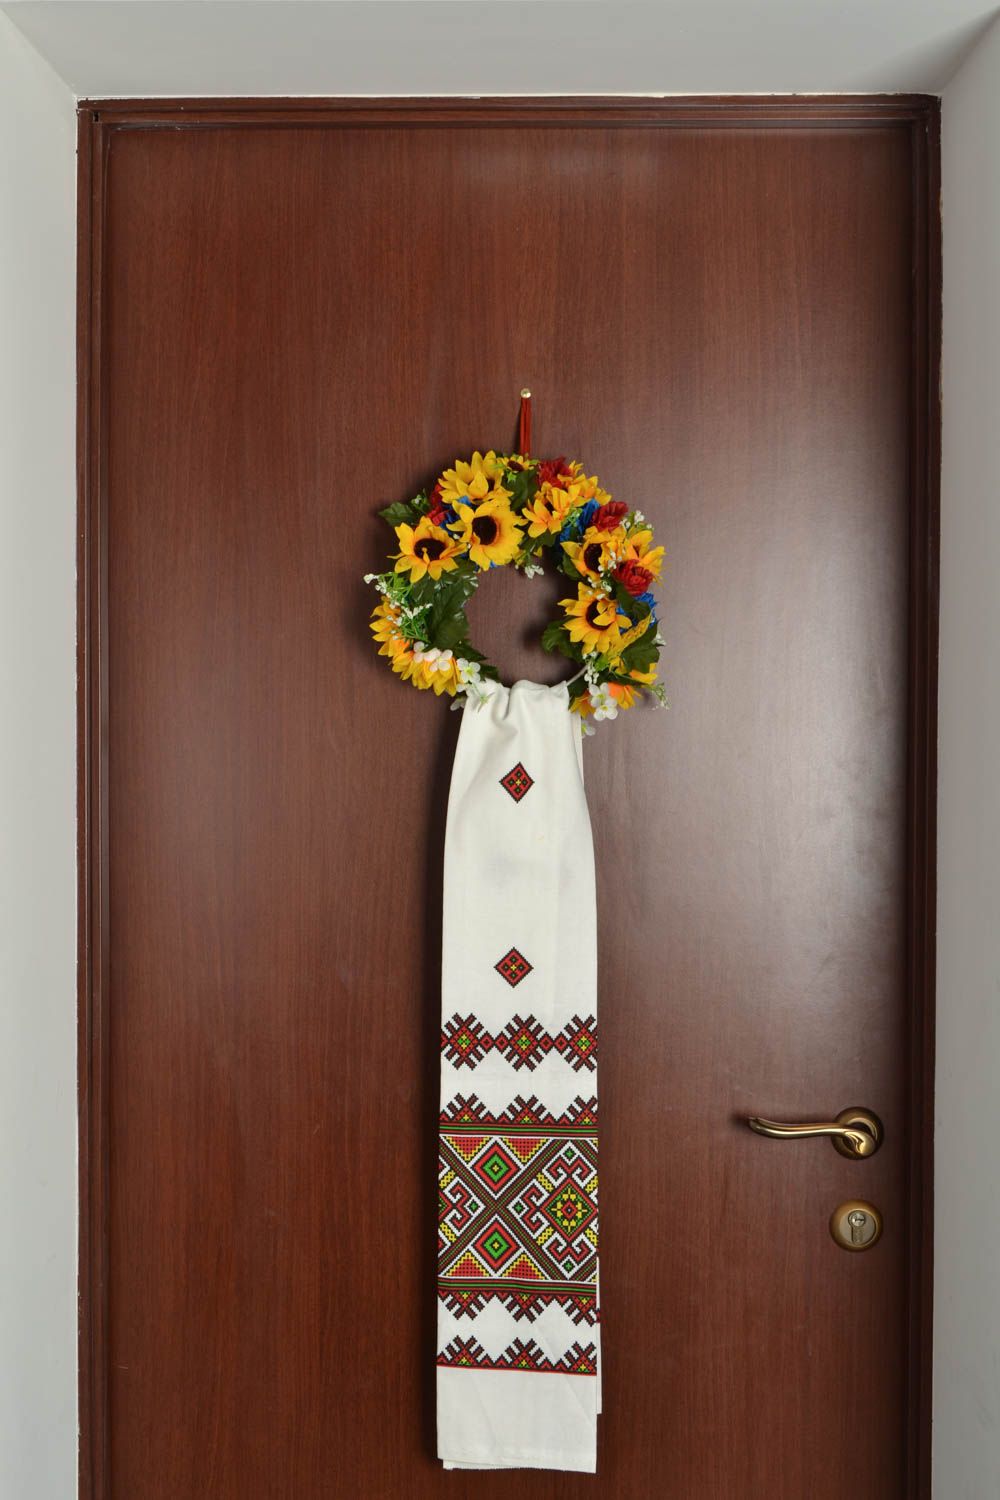 Handmade door wreath photo 1